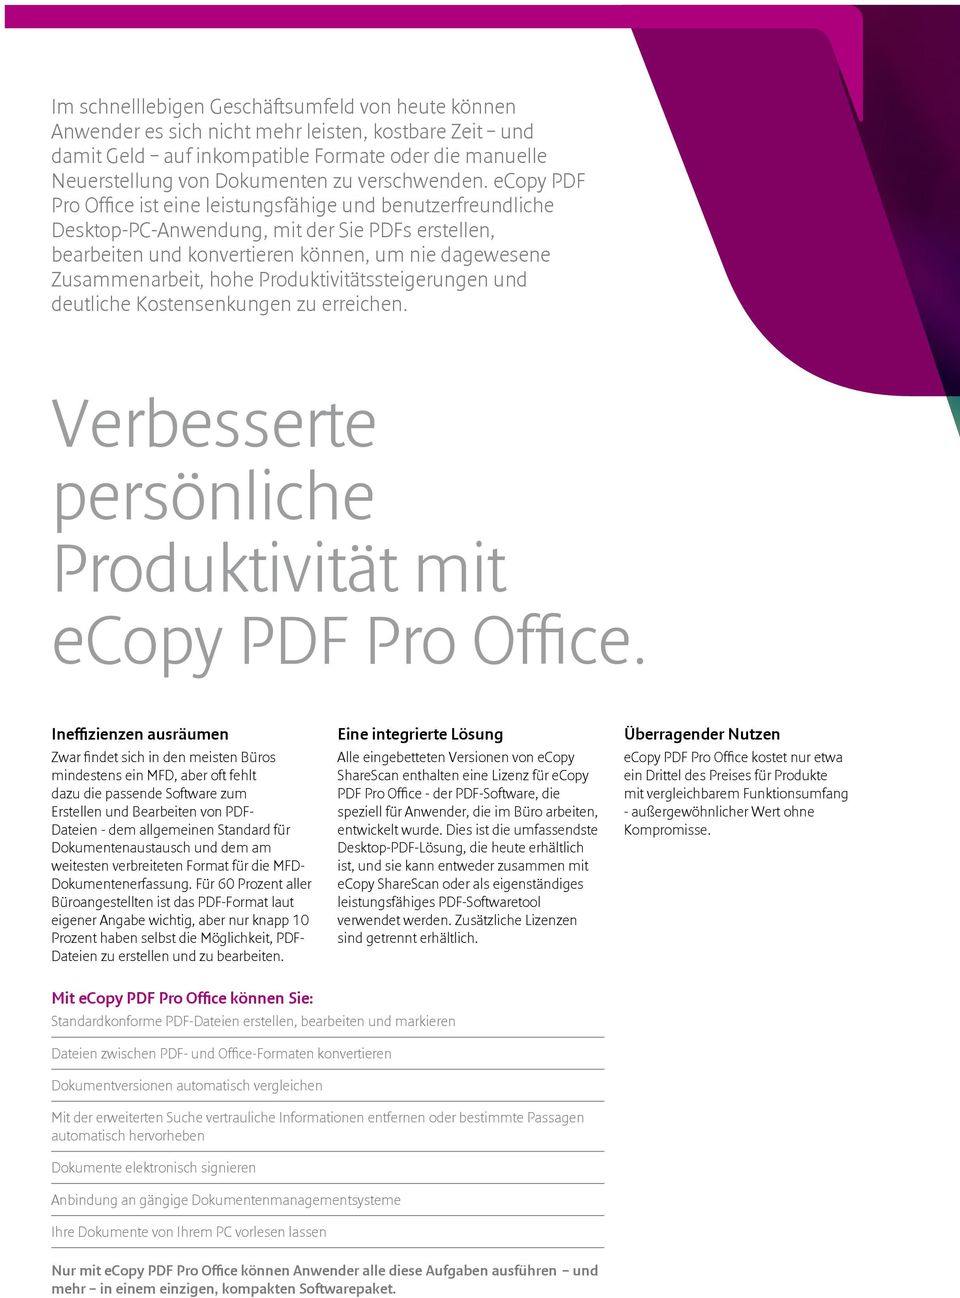 ecopy PDF Pro Office ist eine leistungsfähige und benutzerfreundliche Desktop-PC-Anwendung, mit der Sie PDFs erstellen, bearbeiten und konvertieren können, um nie dagewesene Zusammenarbeit, hohe